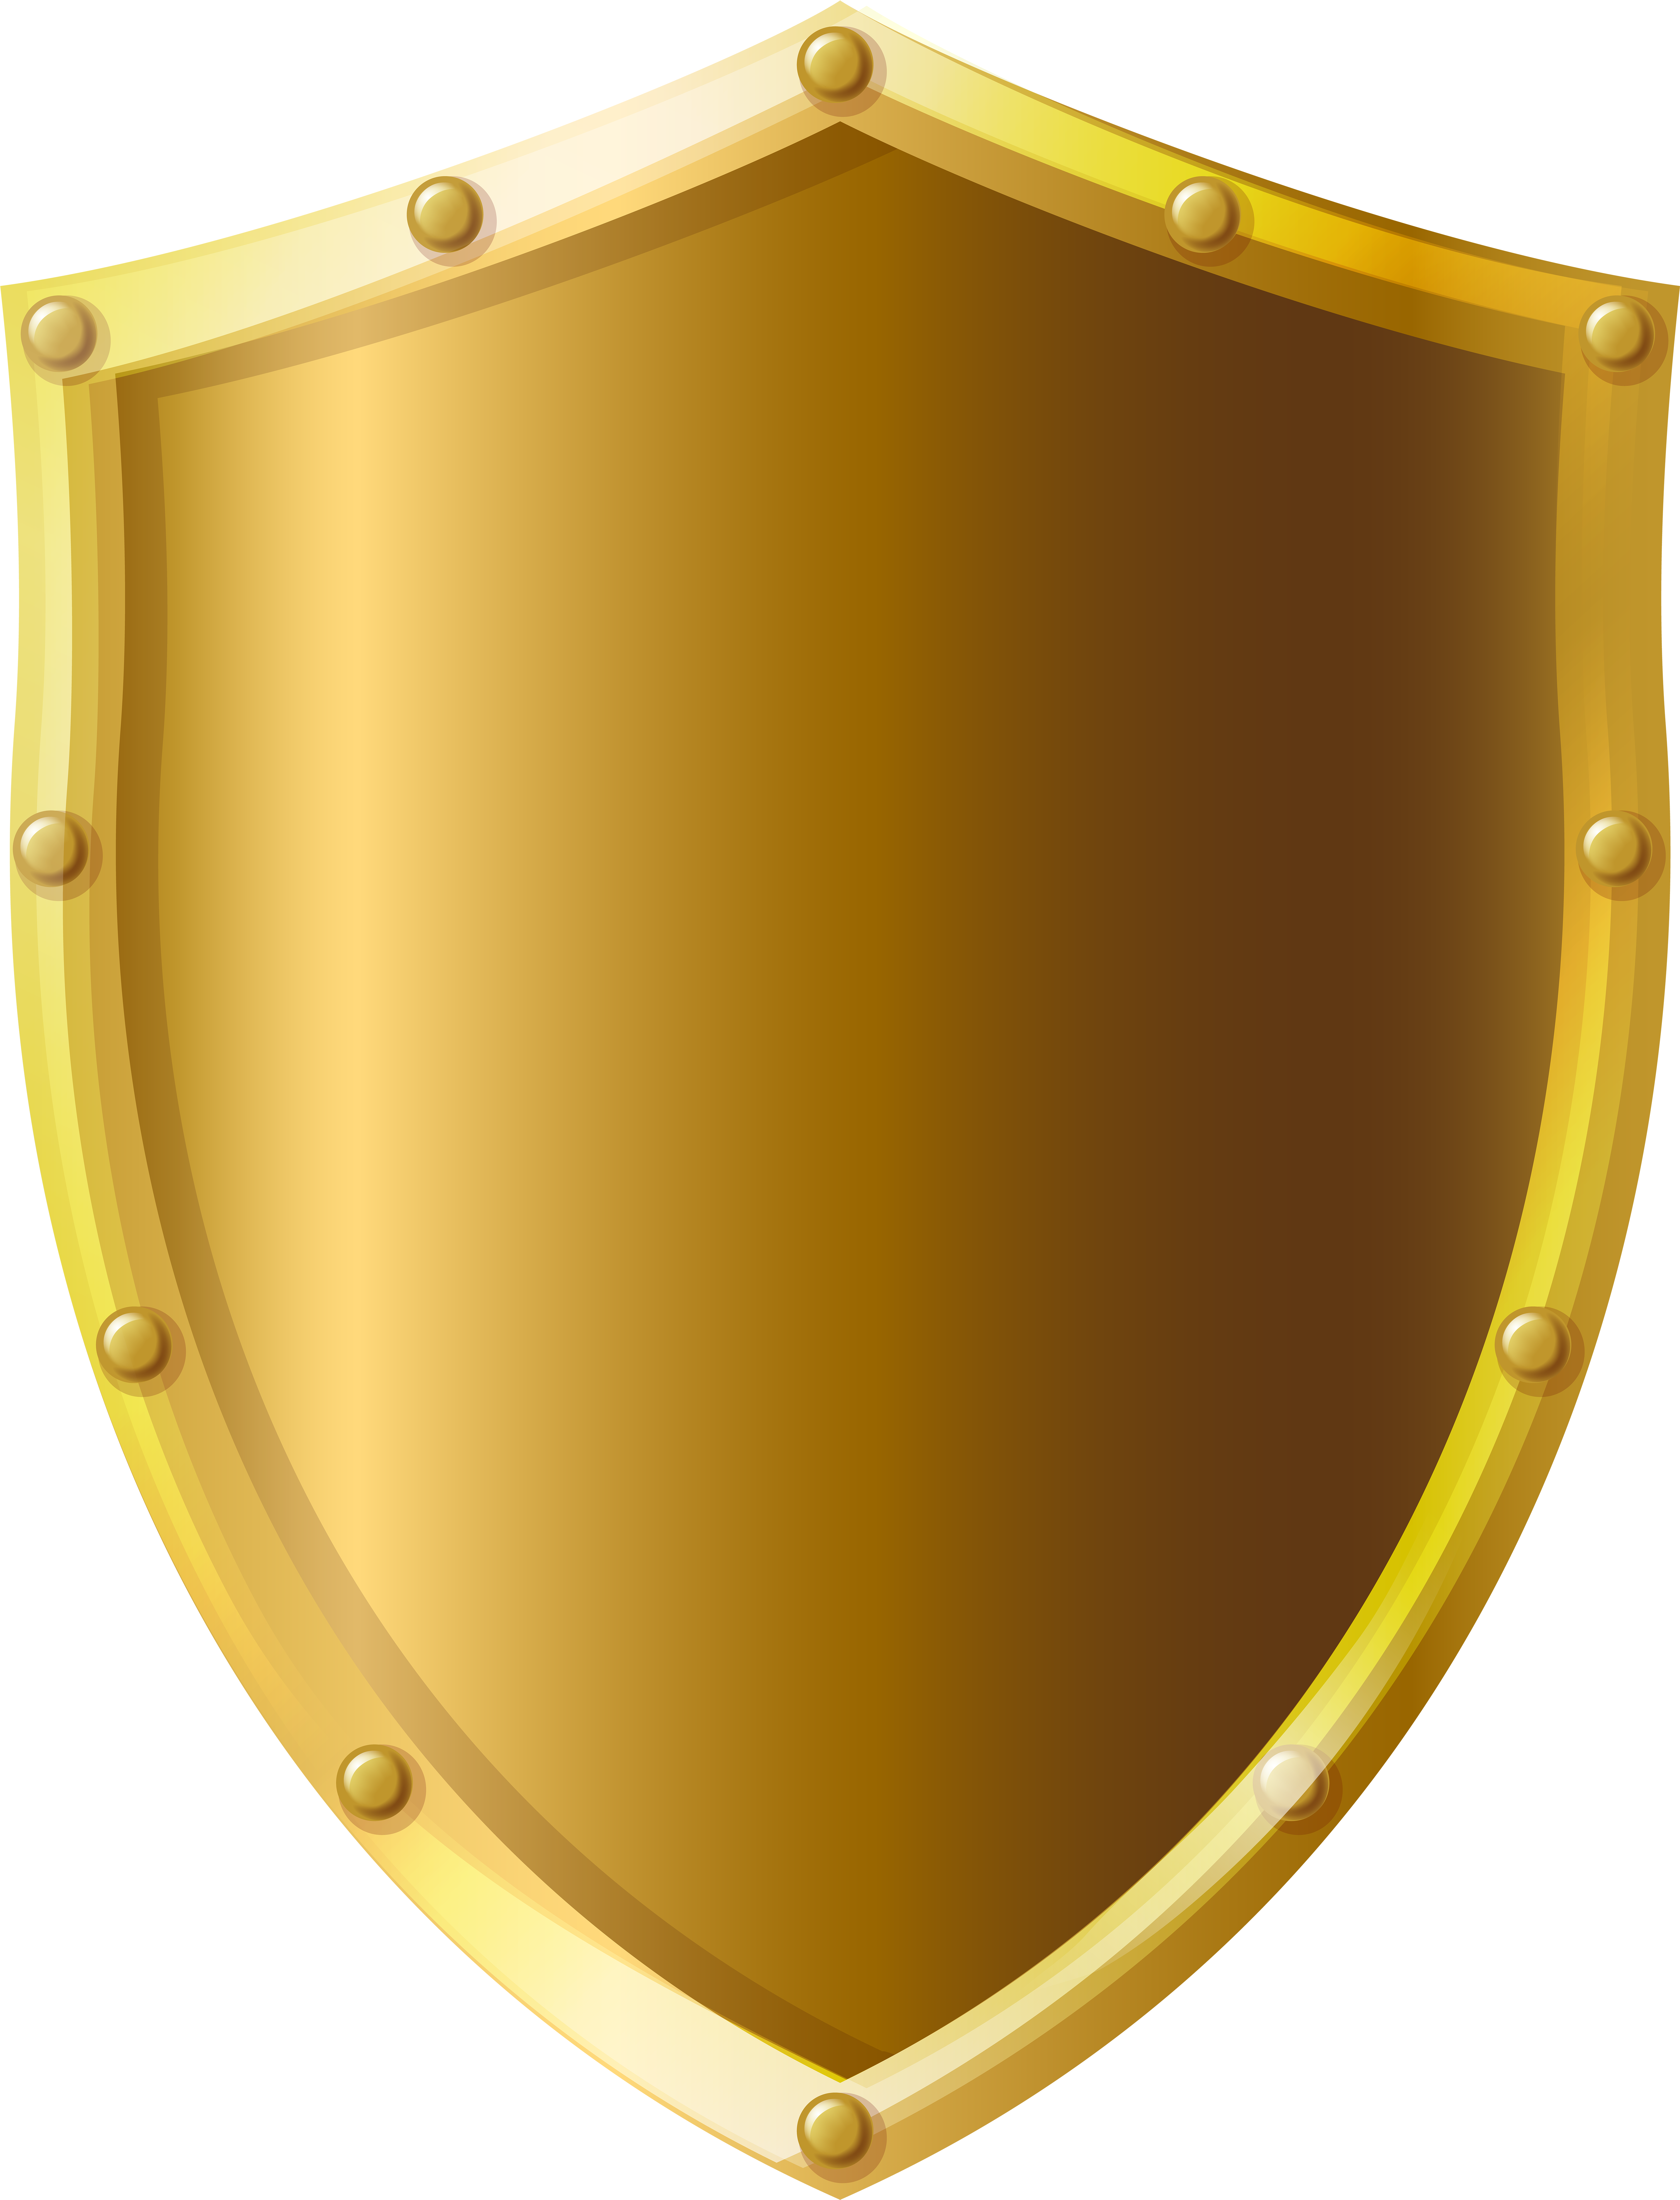 Shield download. Золотой щит. Изображение щита. Геральдический щит. Щит логотип.